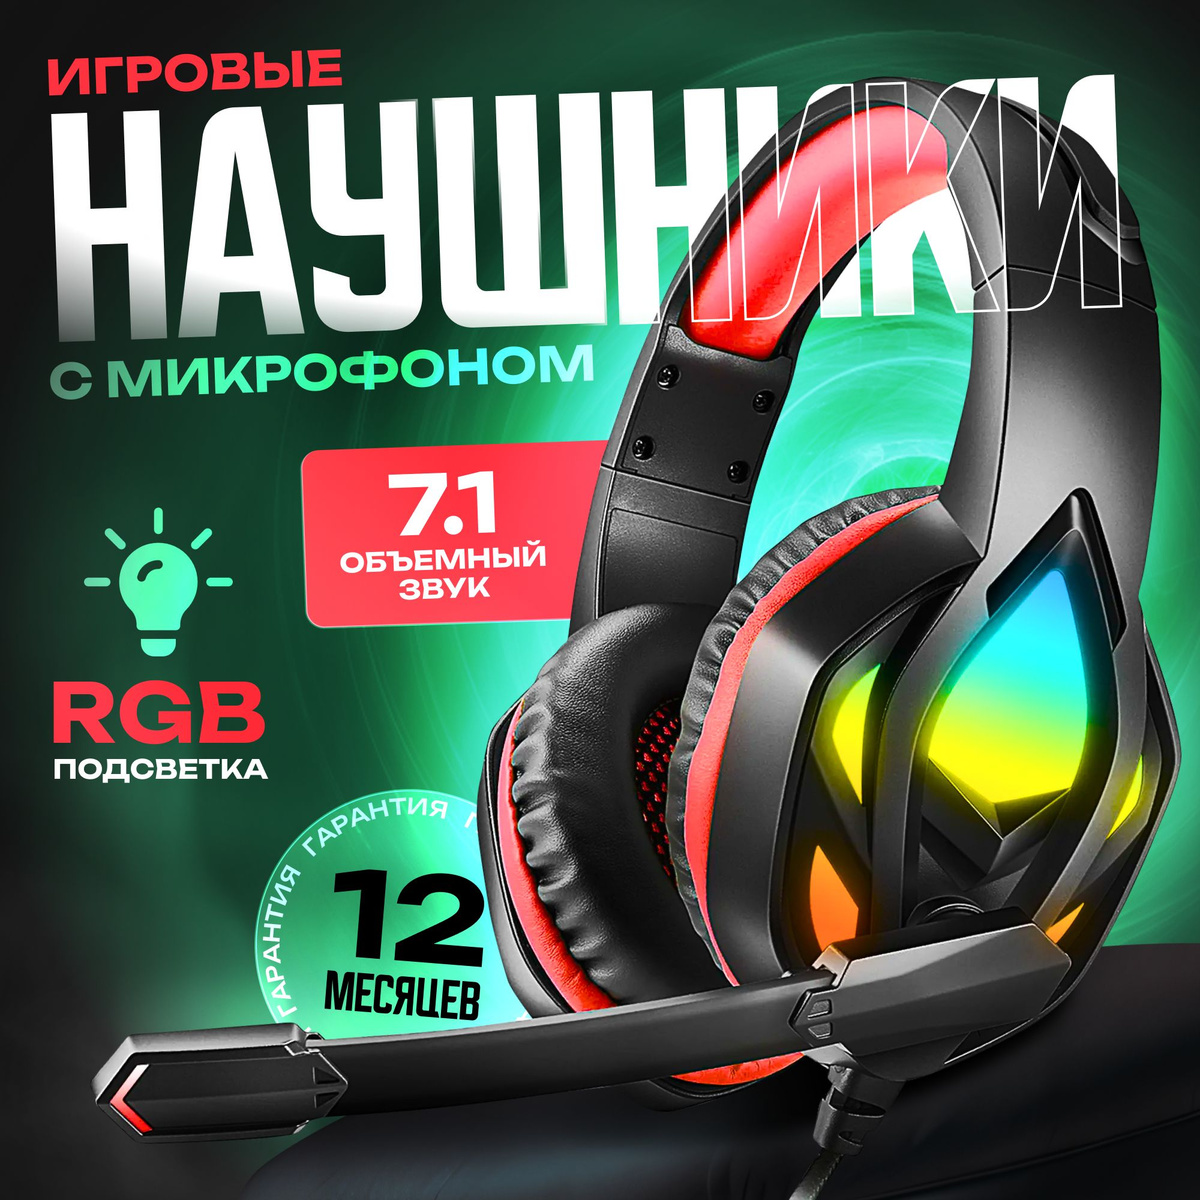 https://www.ozon.ru/product/naushniki-igrovye-s-mikrofonom-provodnye-dlya-kompyutera-dlya-pk-dlya-telefona-1091890418/